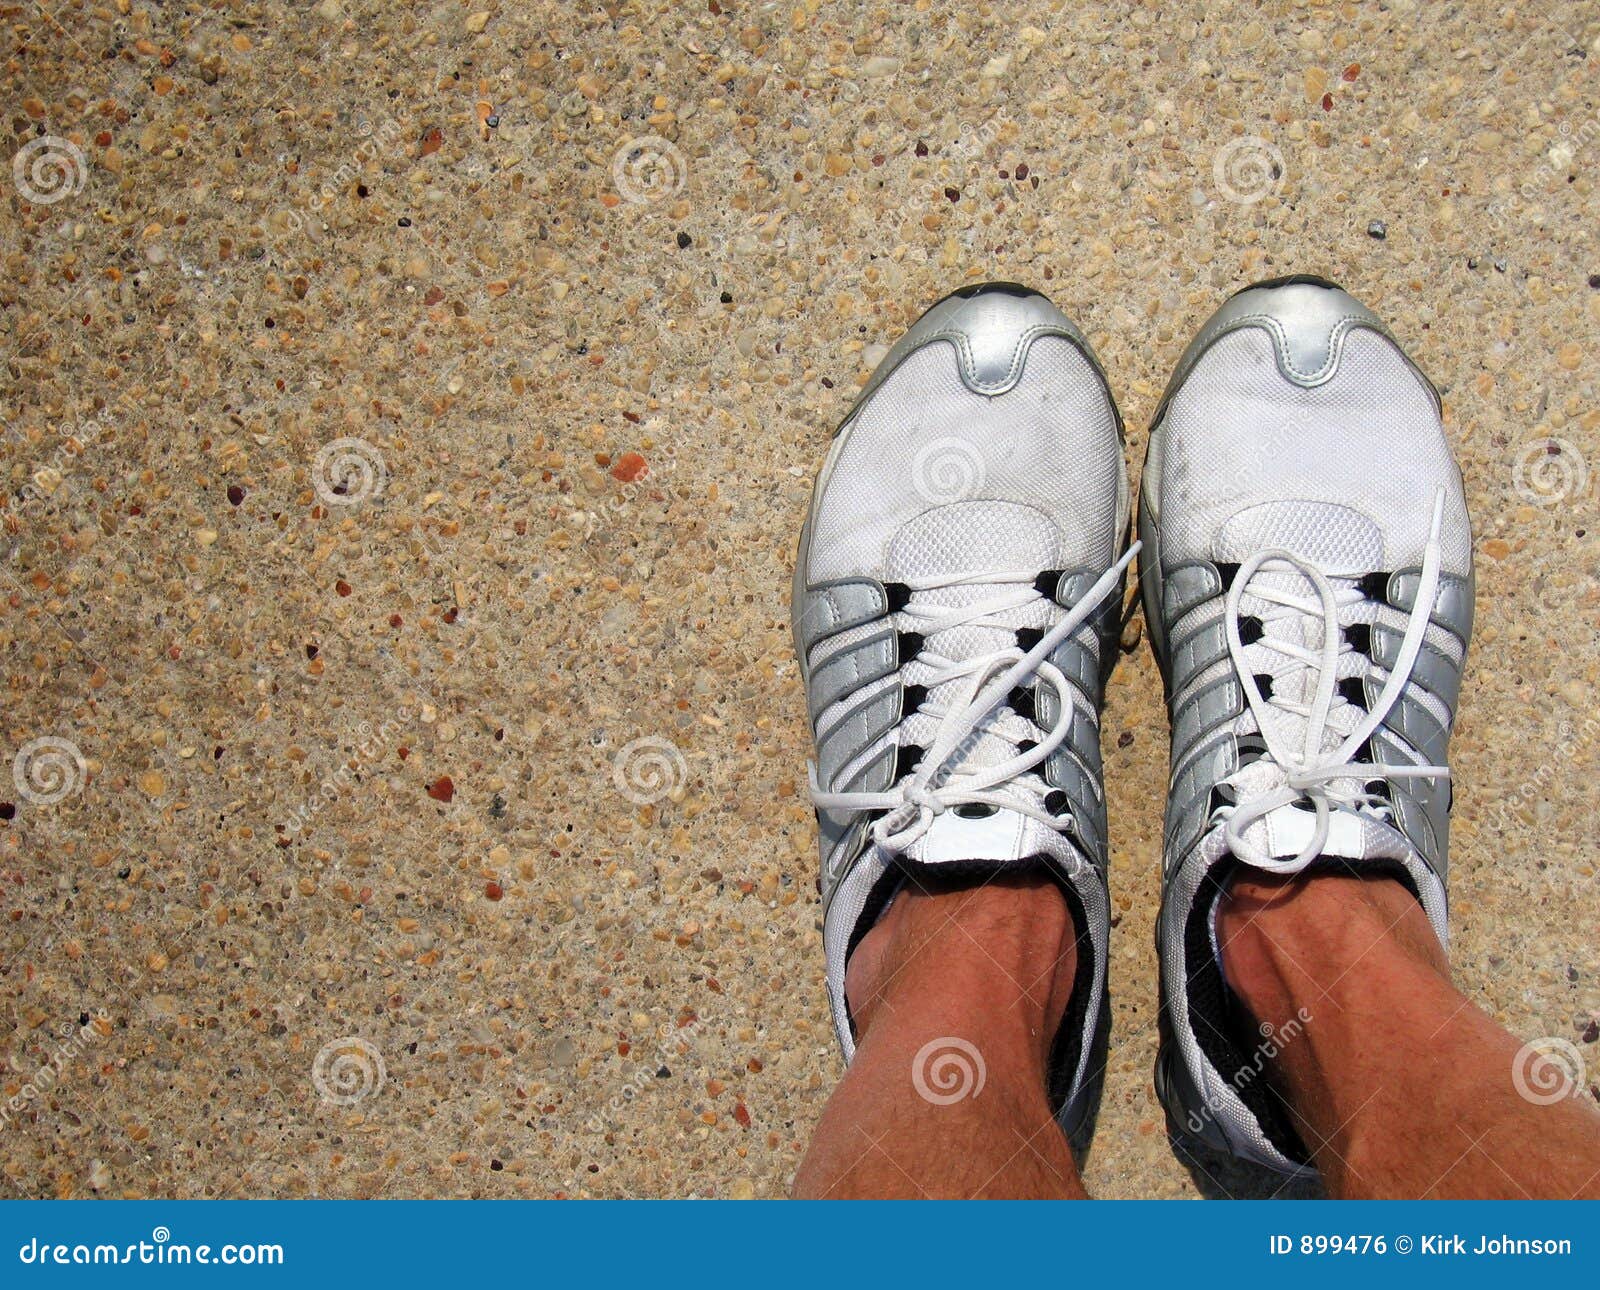 tennis shoes for concrete